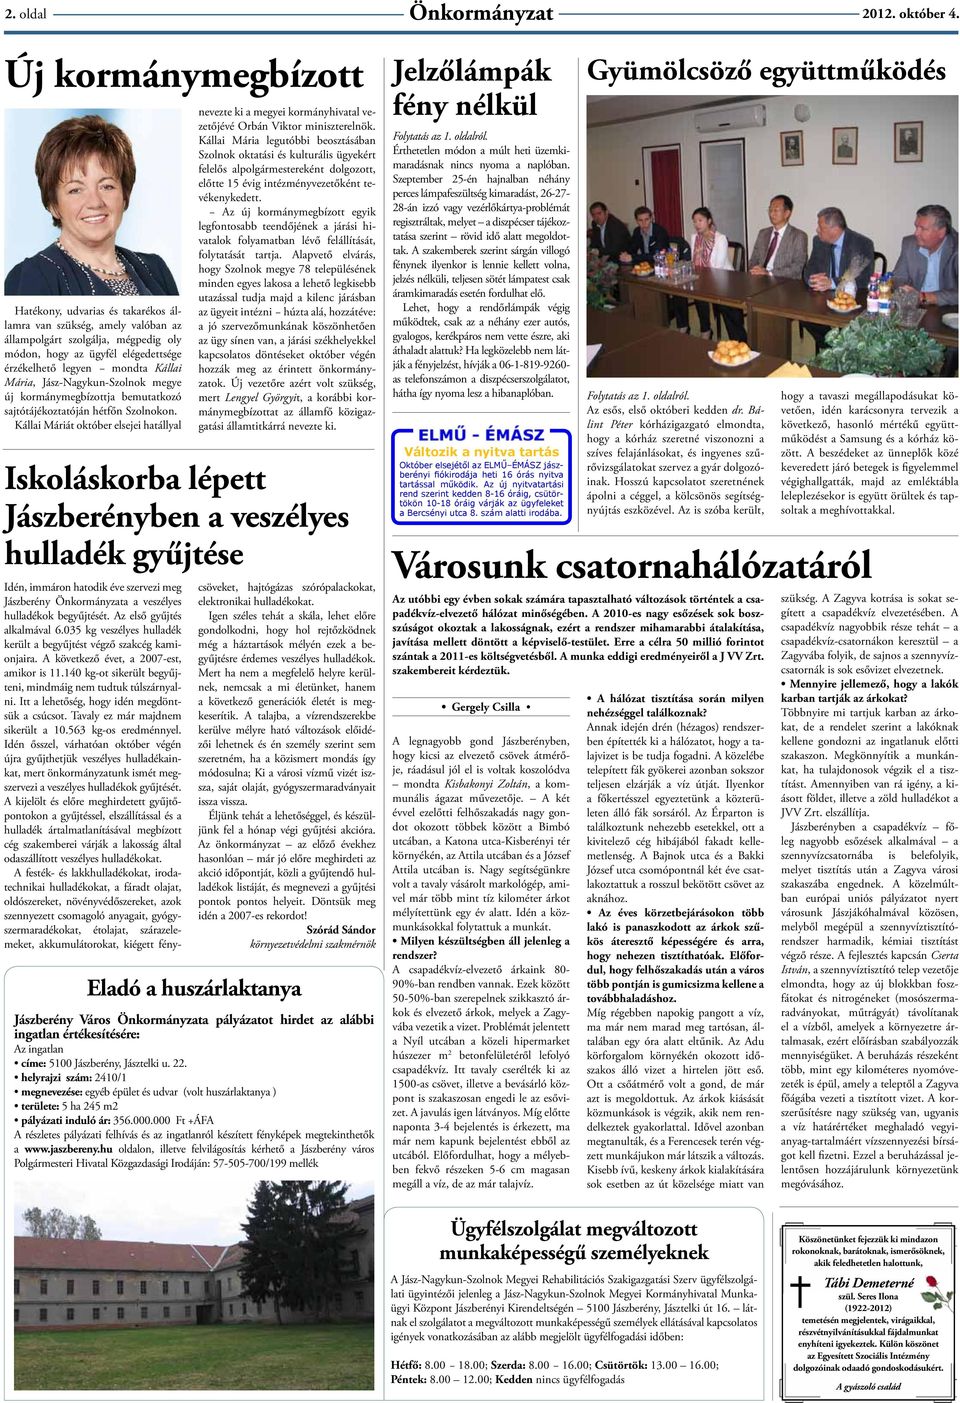 Mária, Jász-Nagykun-Szolnok megye új kormánymegbízottja bemutatkozó sajtótájékoztatóján hétfőn Szolnokon.